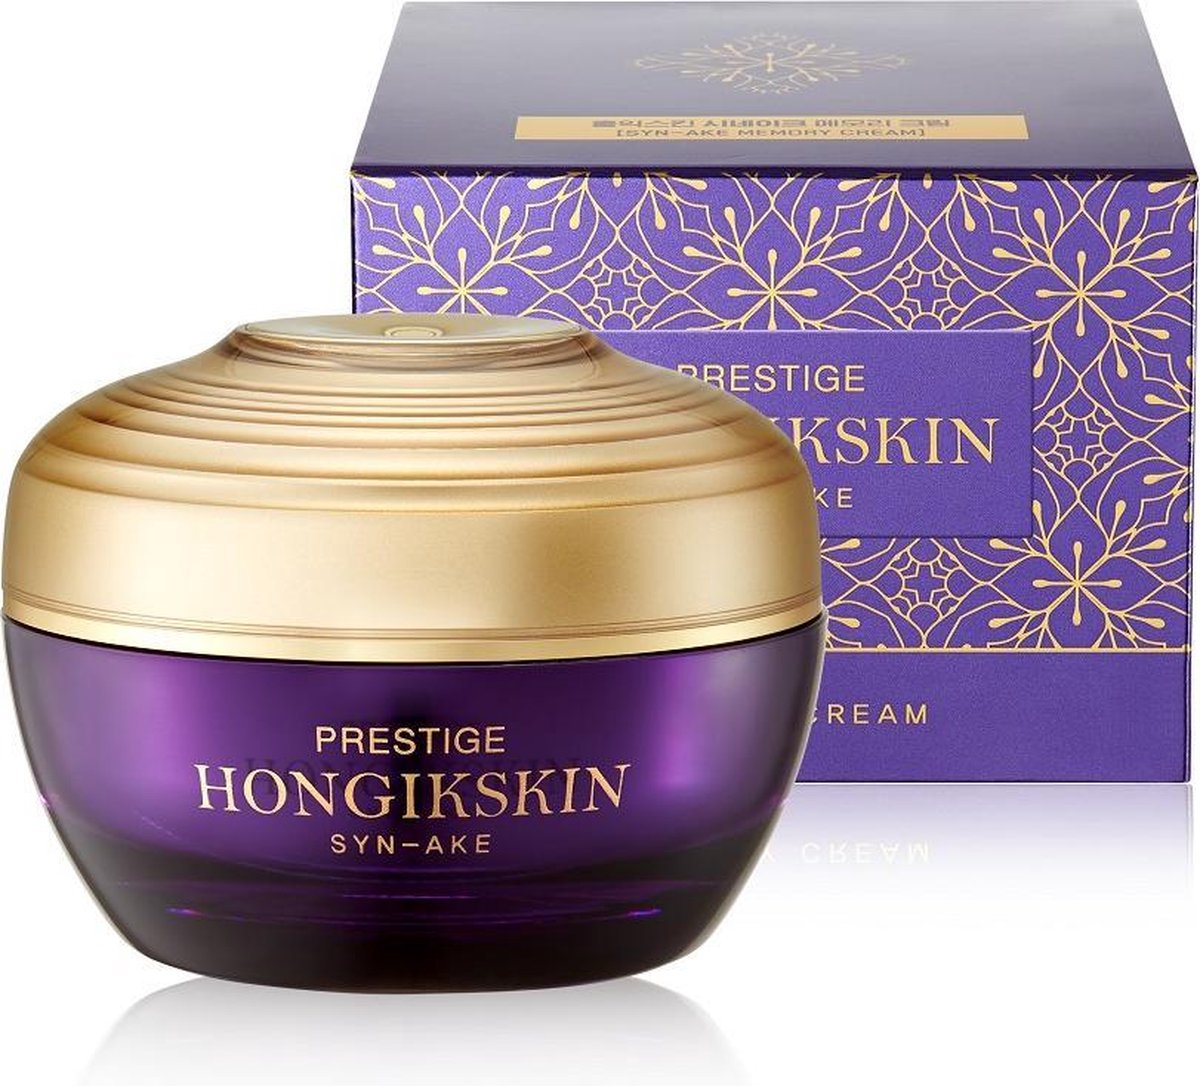 Hongik Skin Prestige - Son-Ake Cream Face Cream With Ecstraktem From Snake Venom 80G